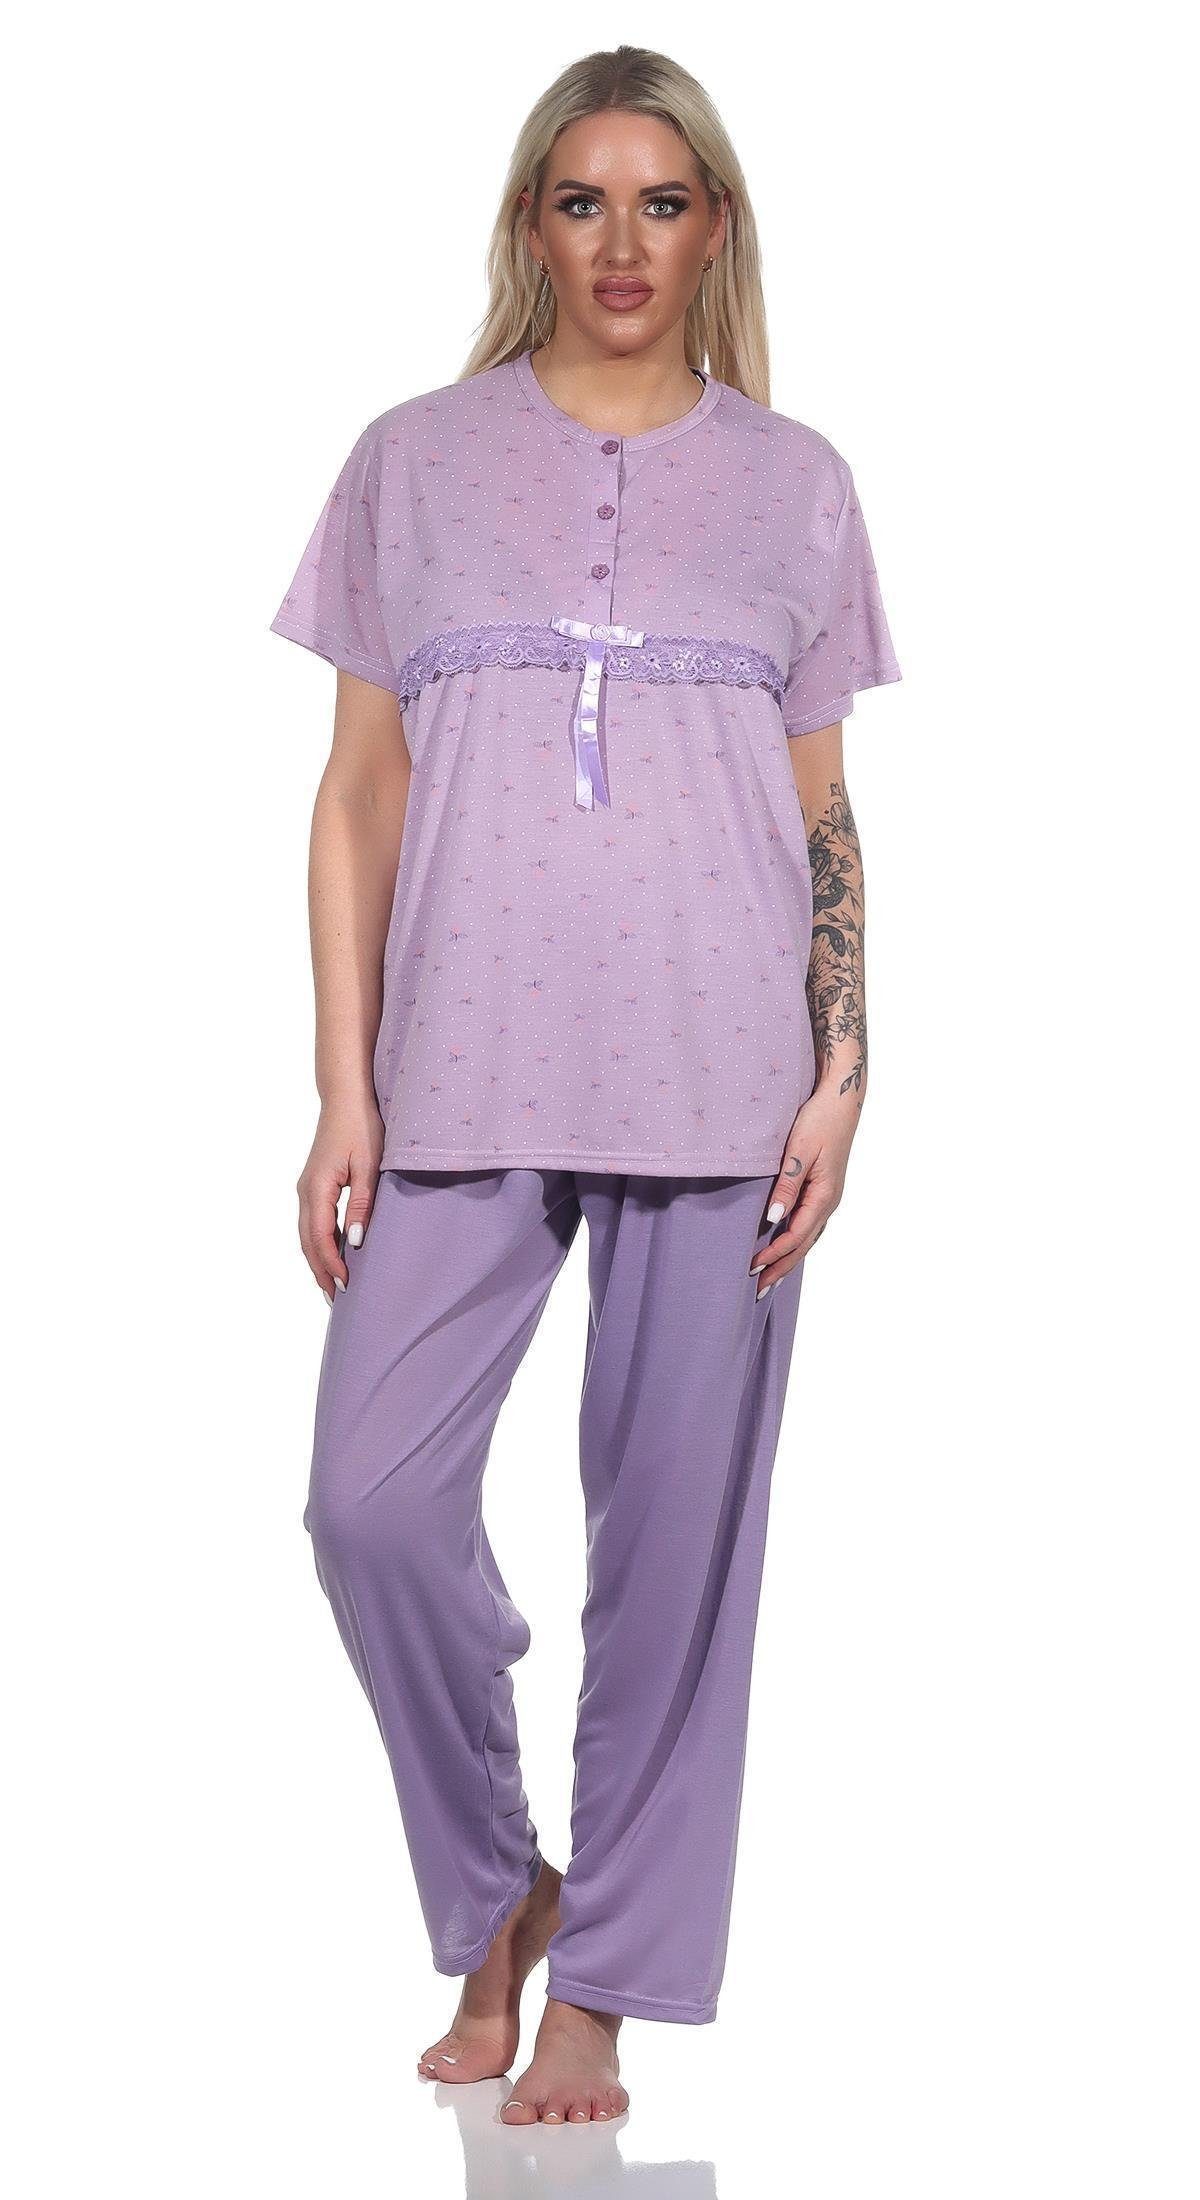 EloModa Pyjama Damen 2 tlg. Pyjama lange Hose Shirt in kurzen Ärmeln; Gr. M - 3XL